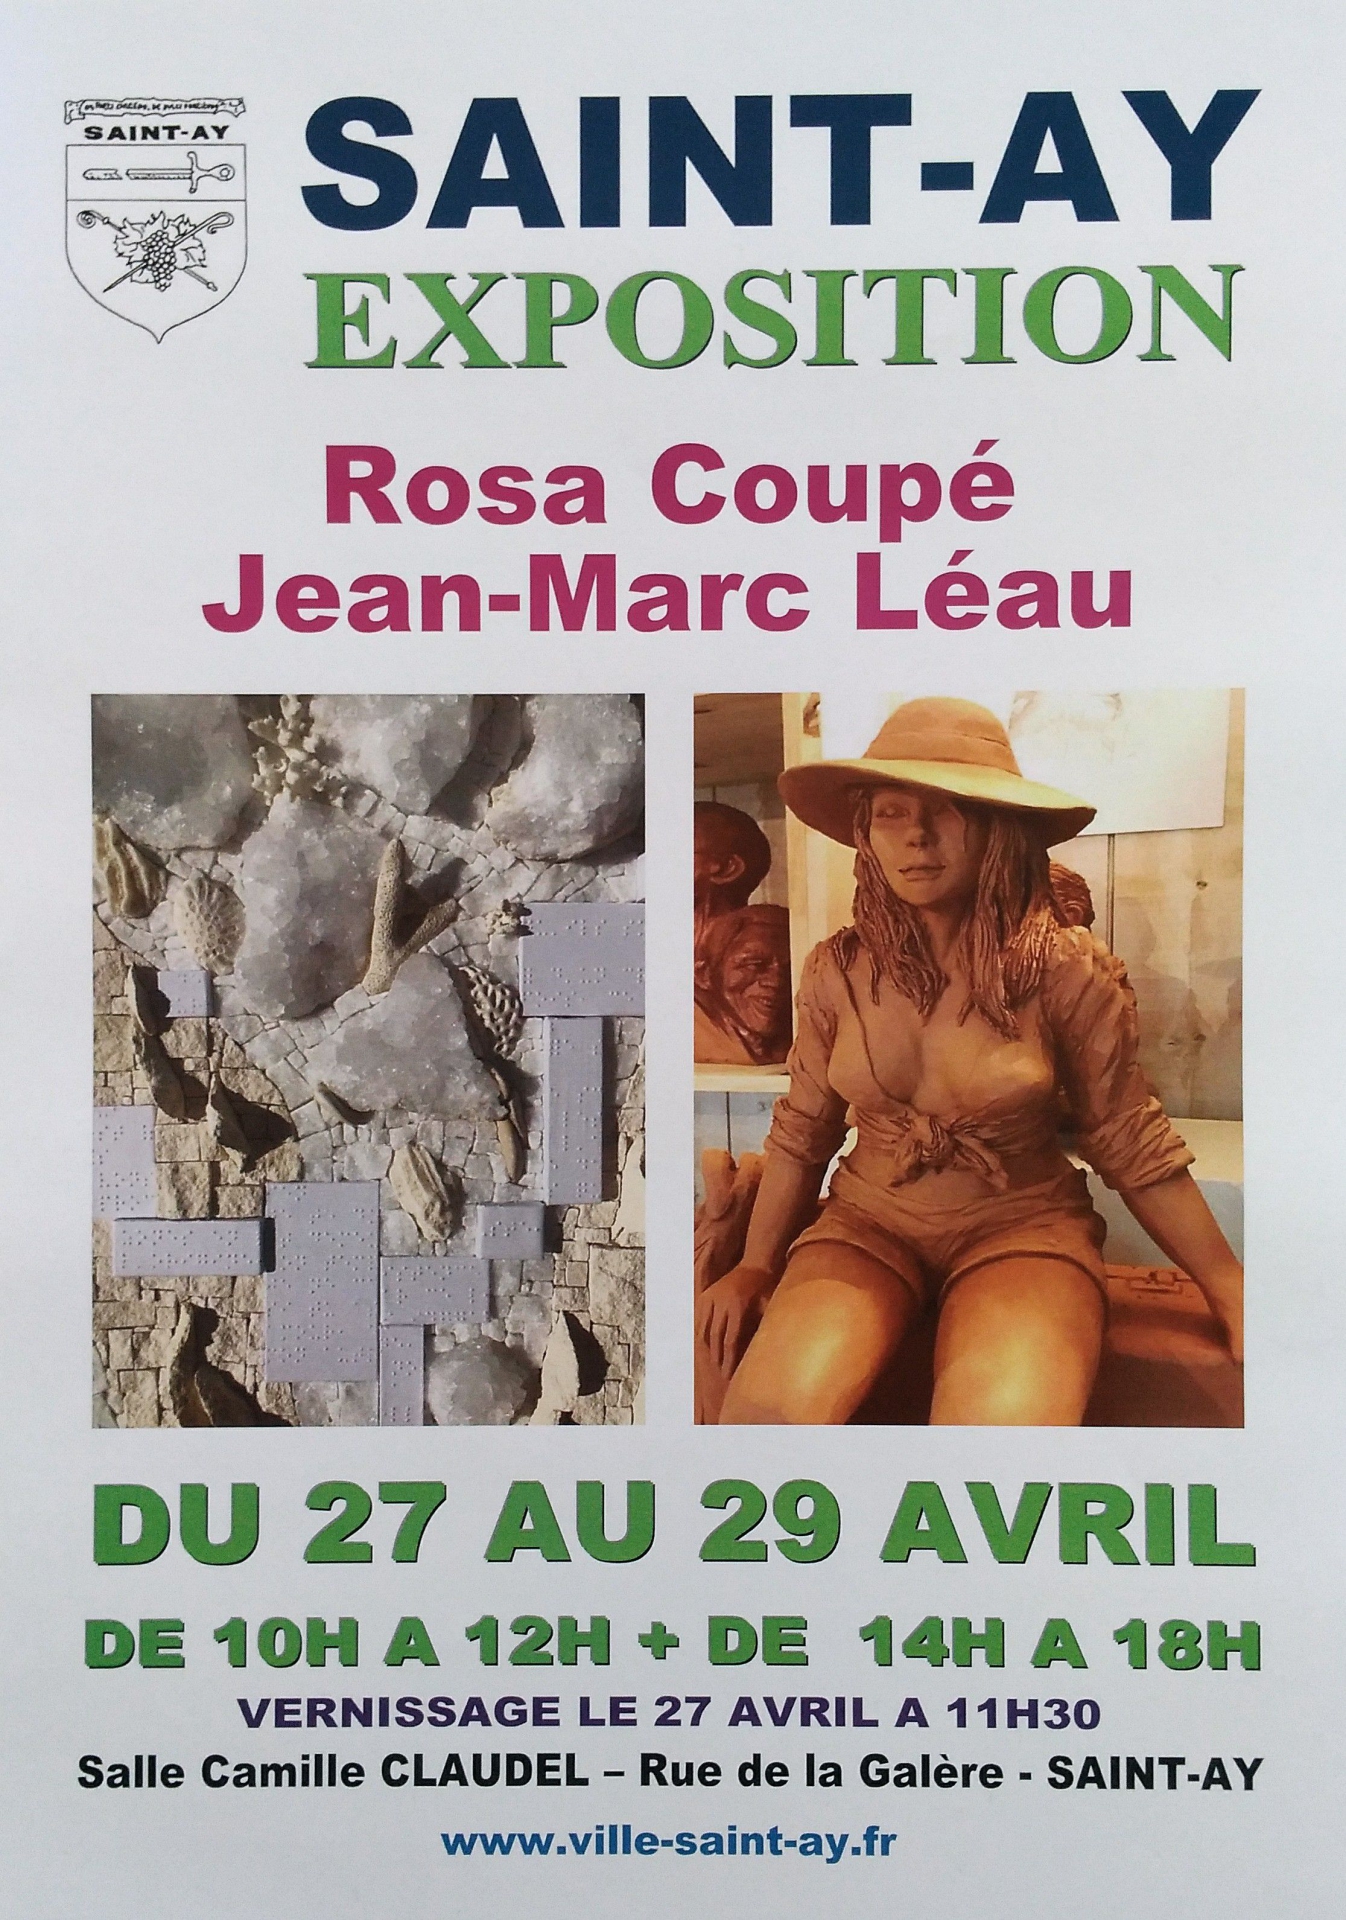 Exposition de Jean-Marc Léau et Rosa Coupé Saint-Ay, avril 2019